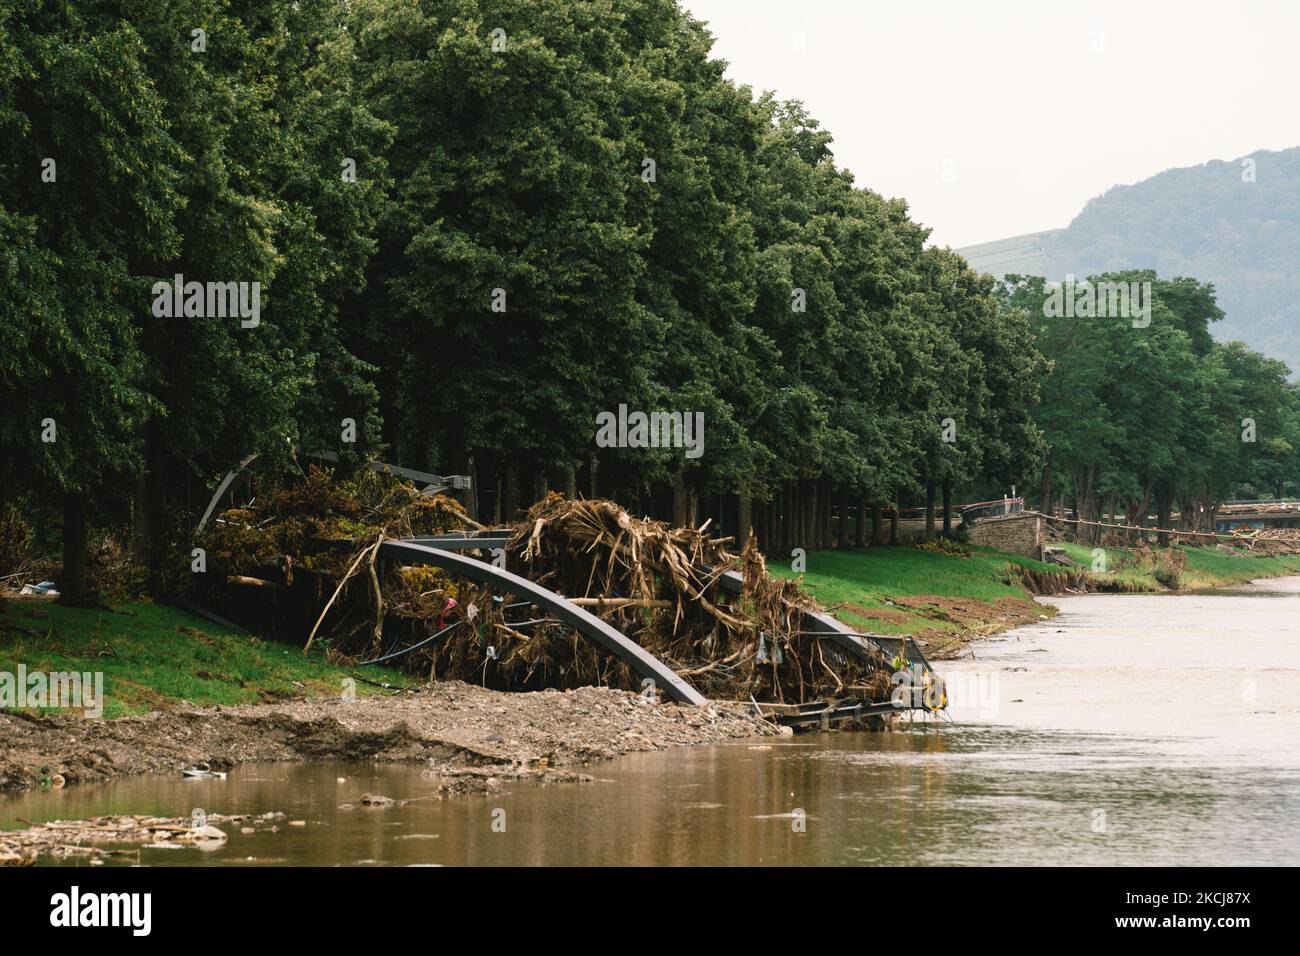 Am 4. August 2021 ist die überflutete Szene an der Ahr in Bad Neuenahr-Ahrweiler als zwei Wochen nach der Flutkatastrophe zu sehen (Foto: Ying Tang/NurPhoto) Stockfoto